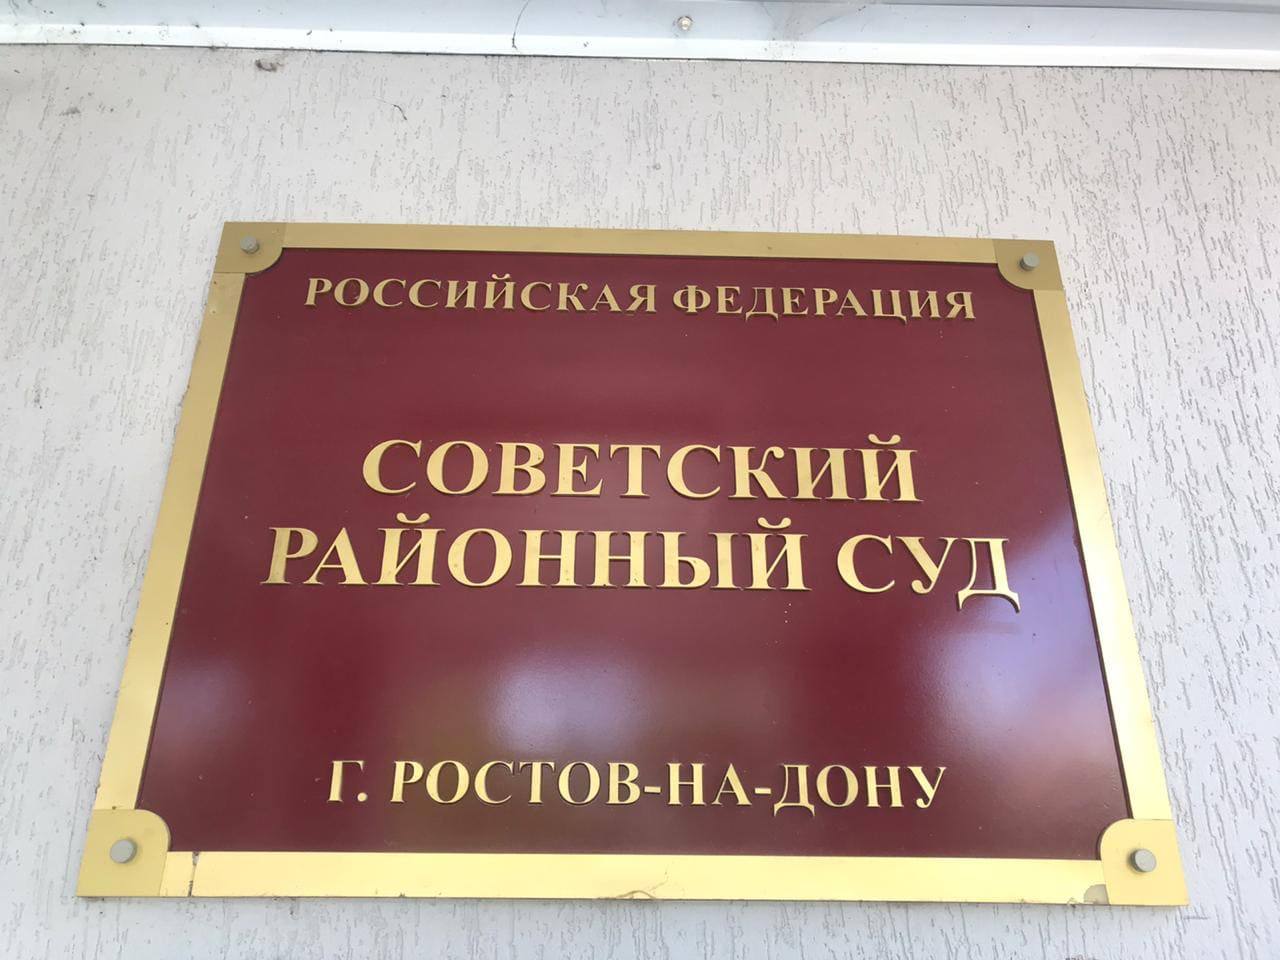 Почта советского районного суда